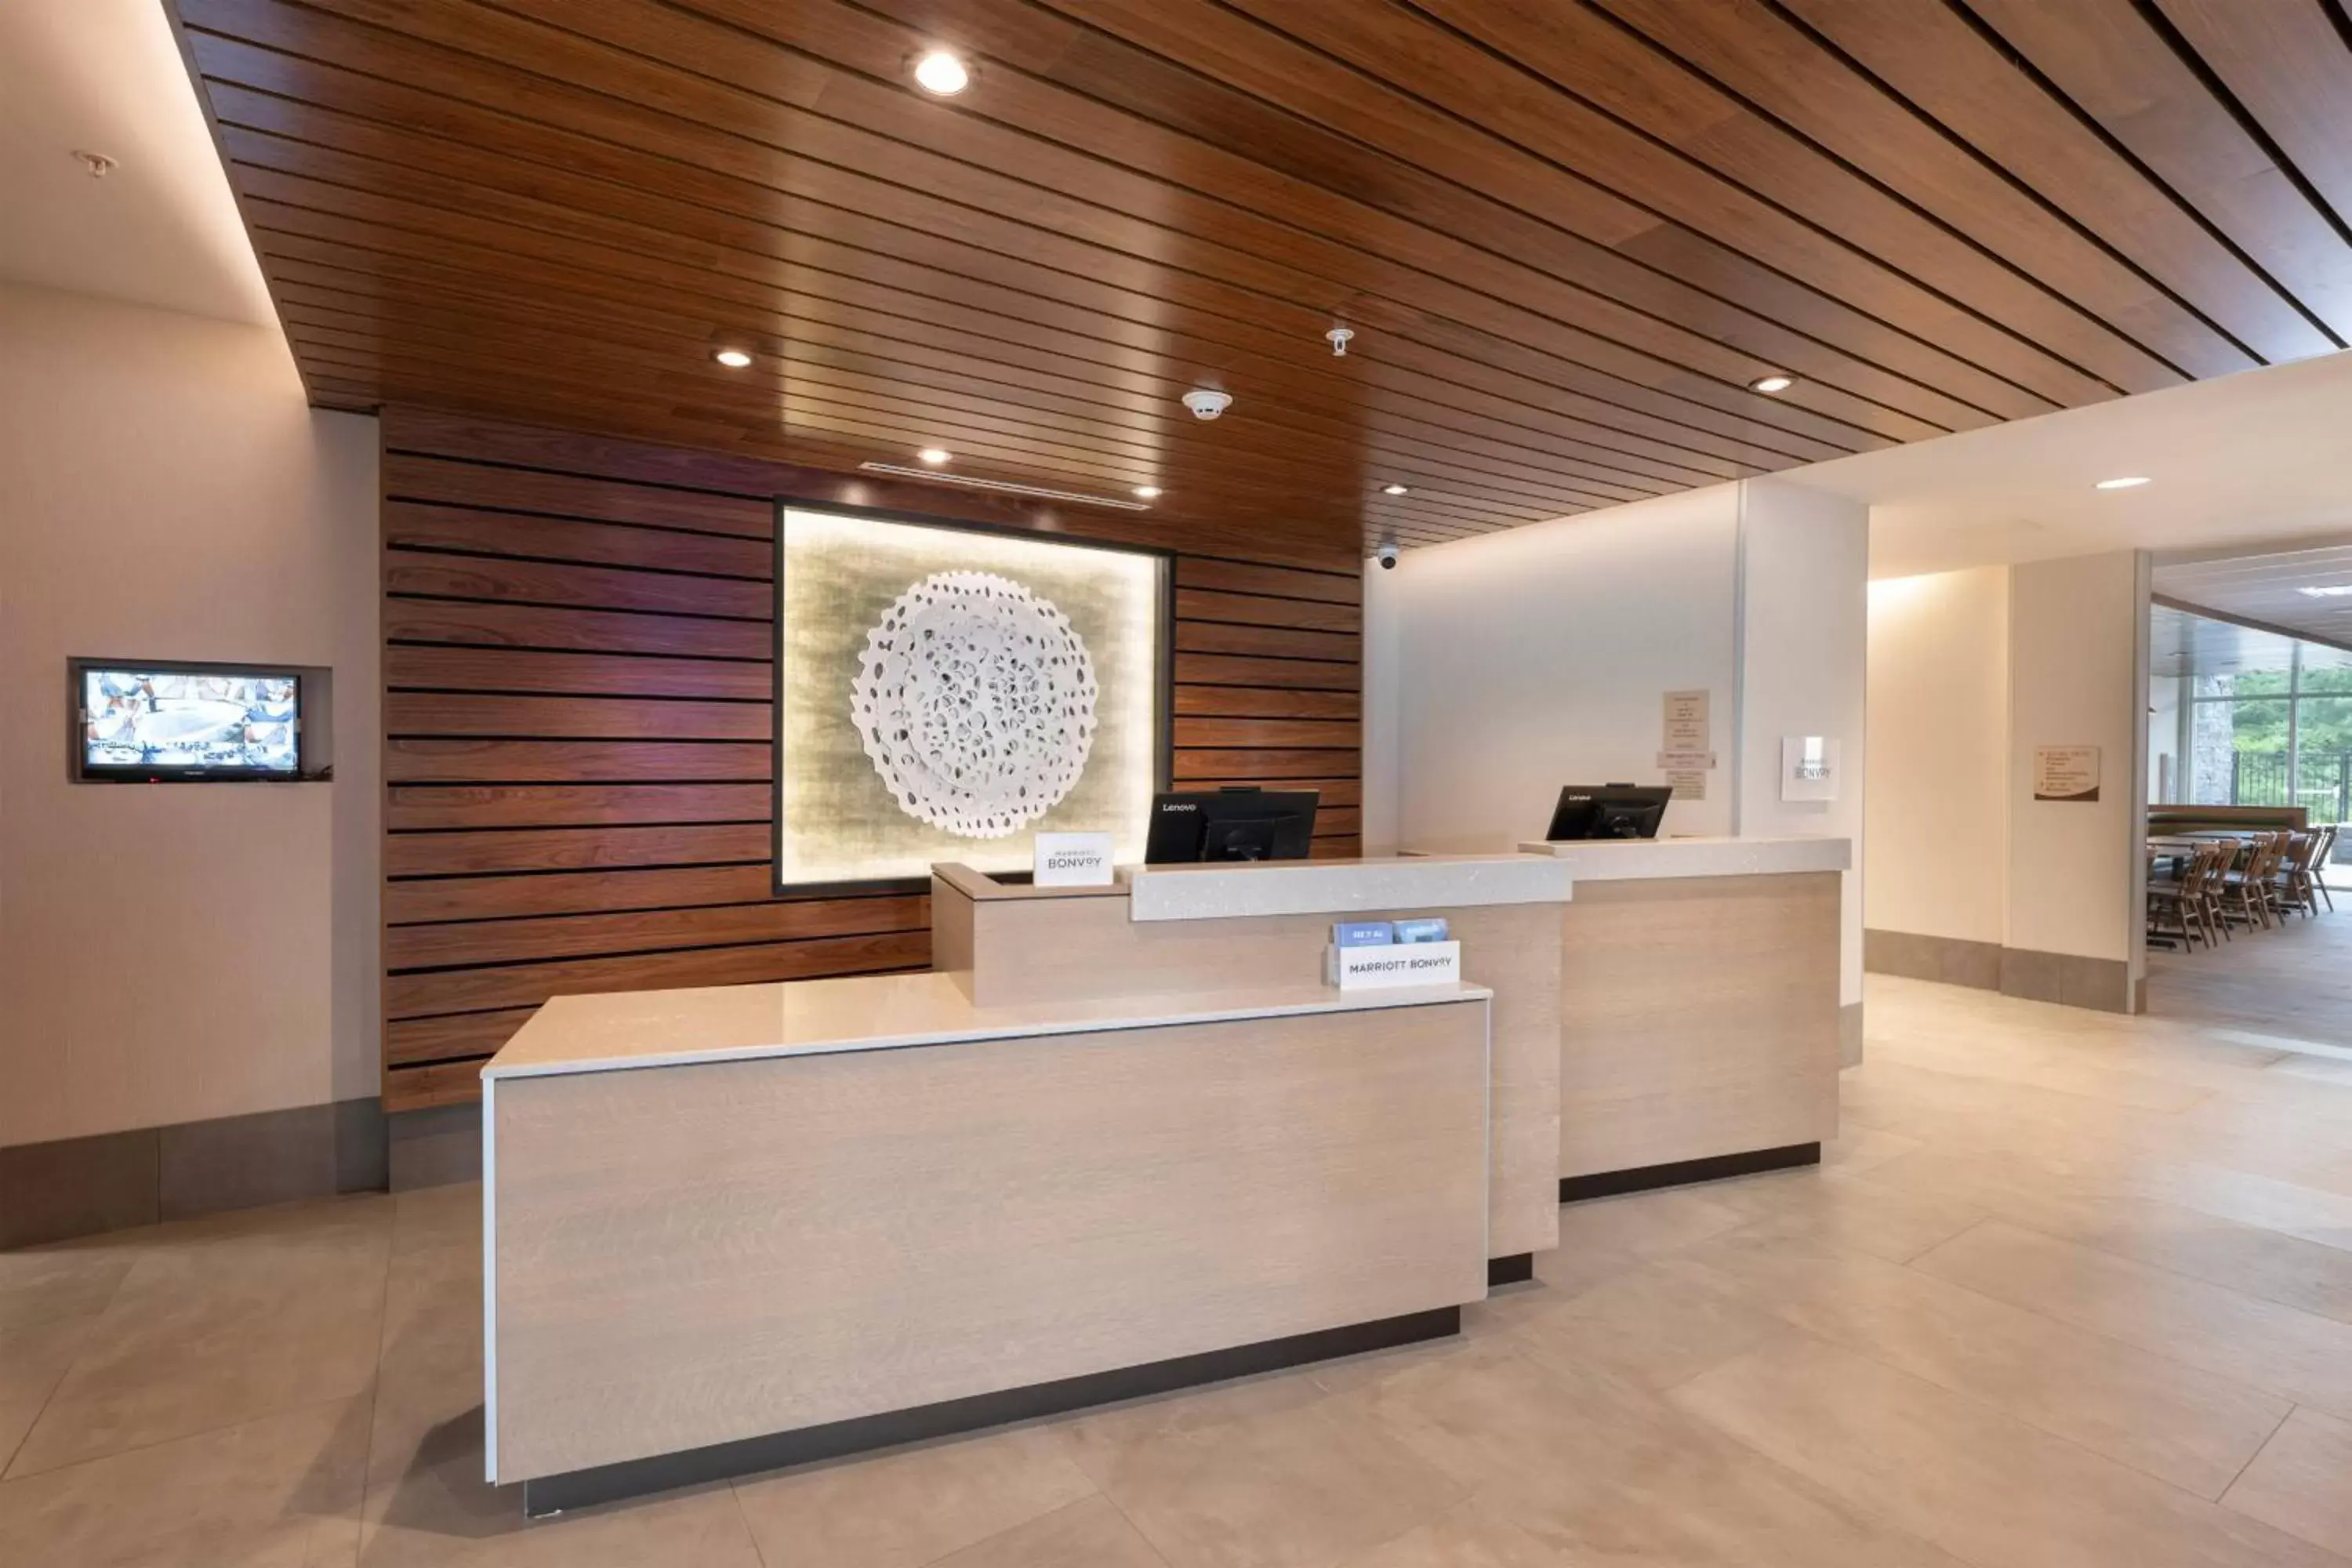 Lobby or reception, Lobby/Reception in Fairfield Inn & Suites Arkadelphia